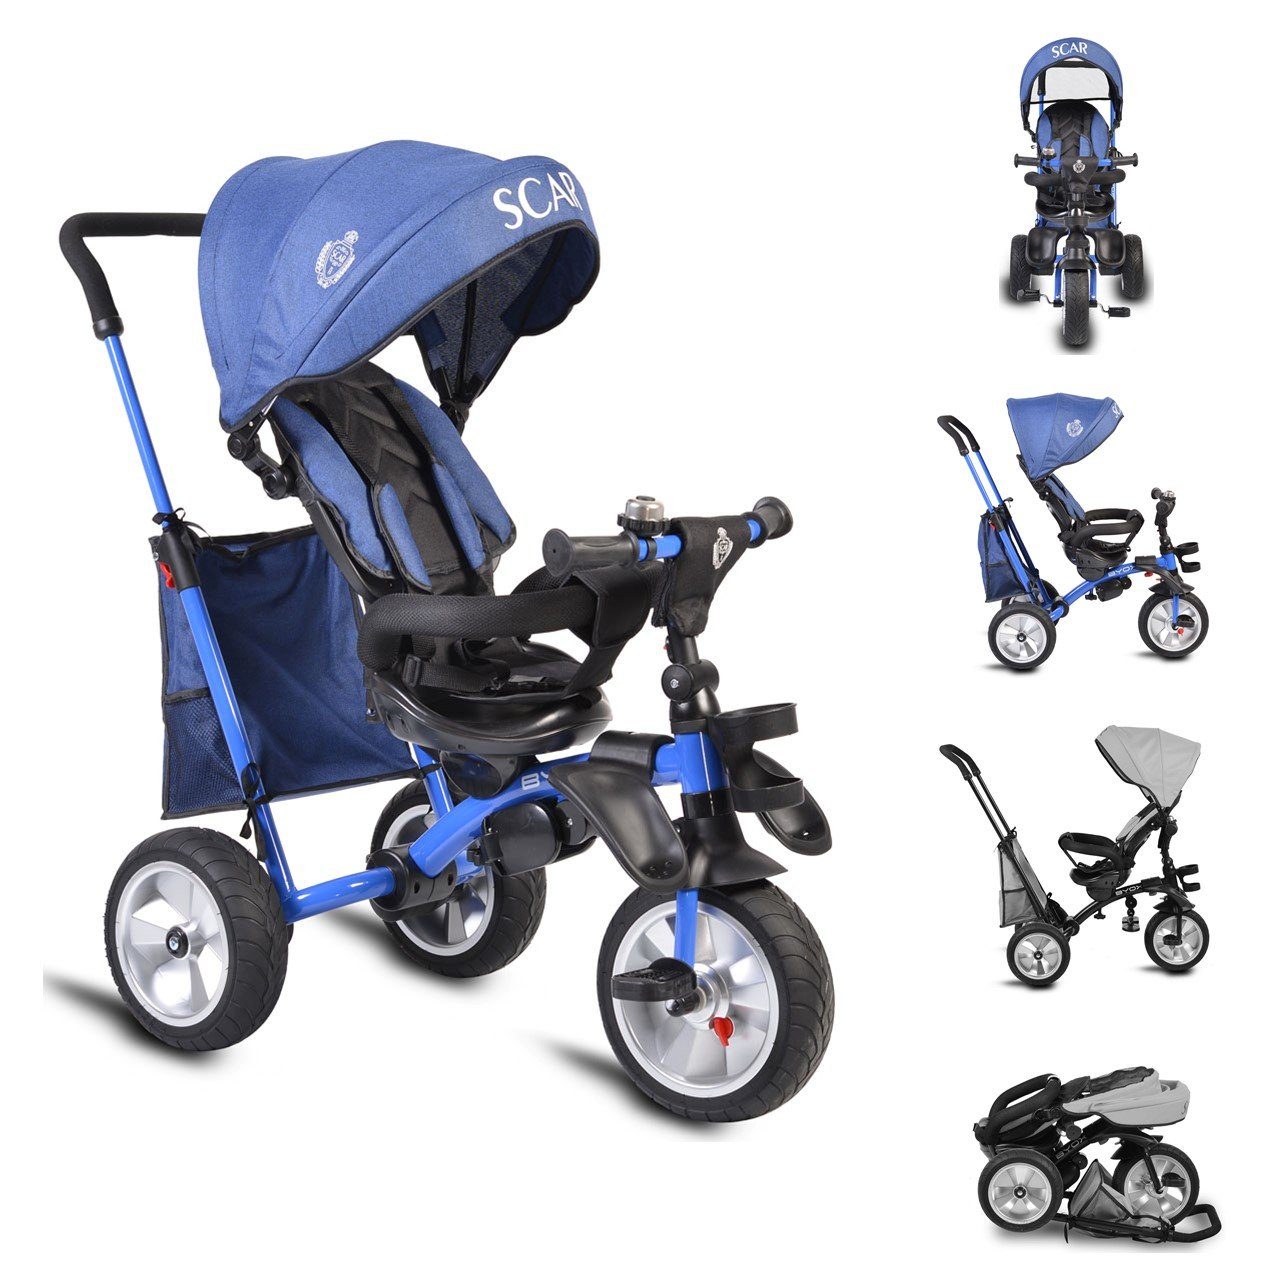 ATAA Baby Dreirad 5 in 1 Blau mit Gummireifen für Kinder